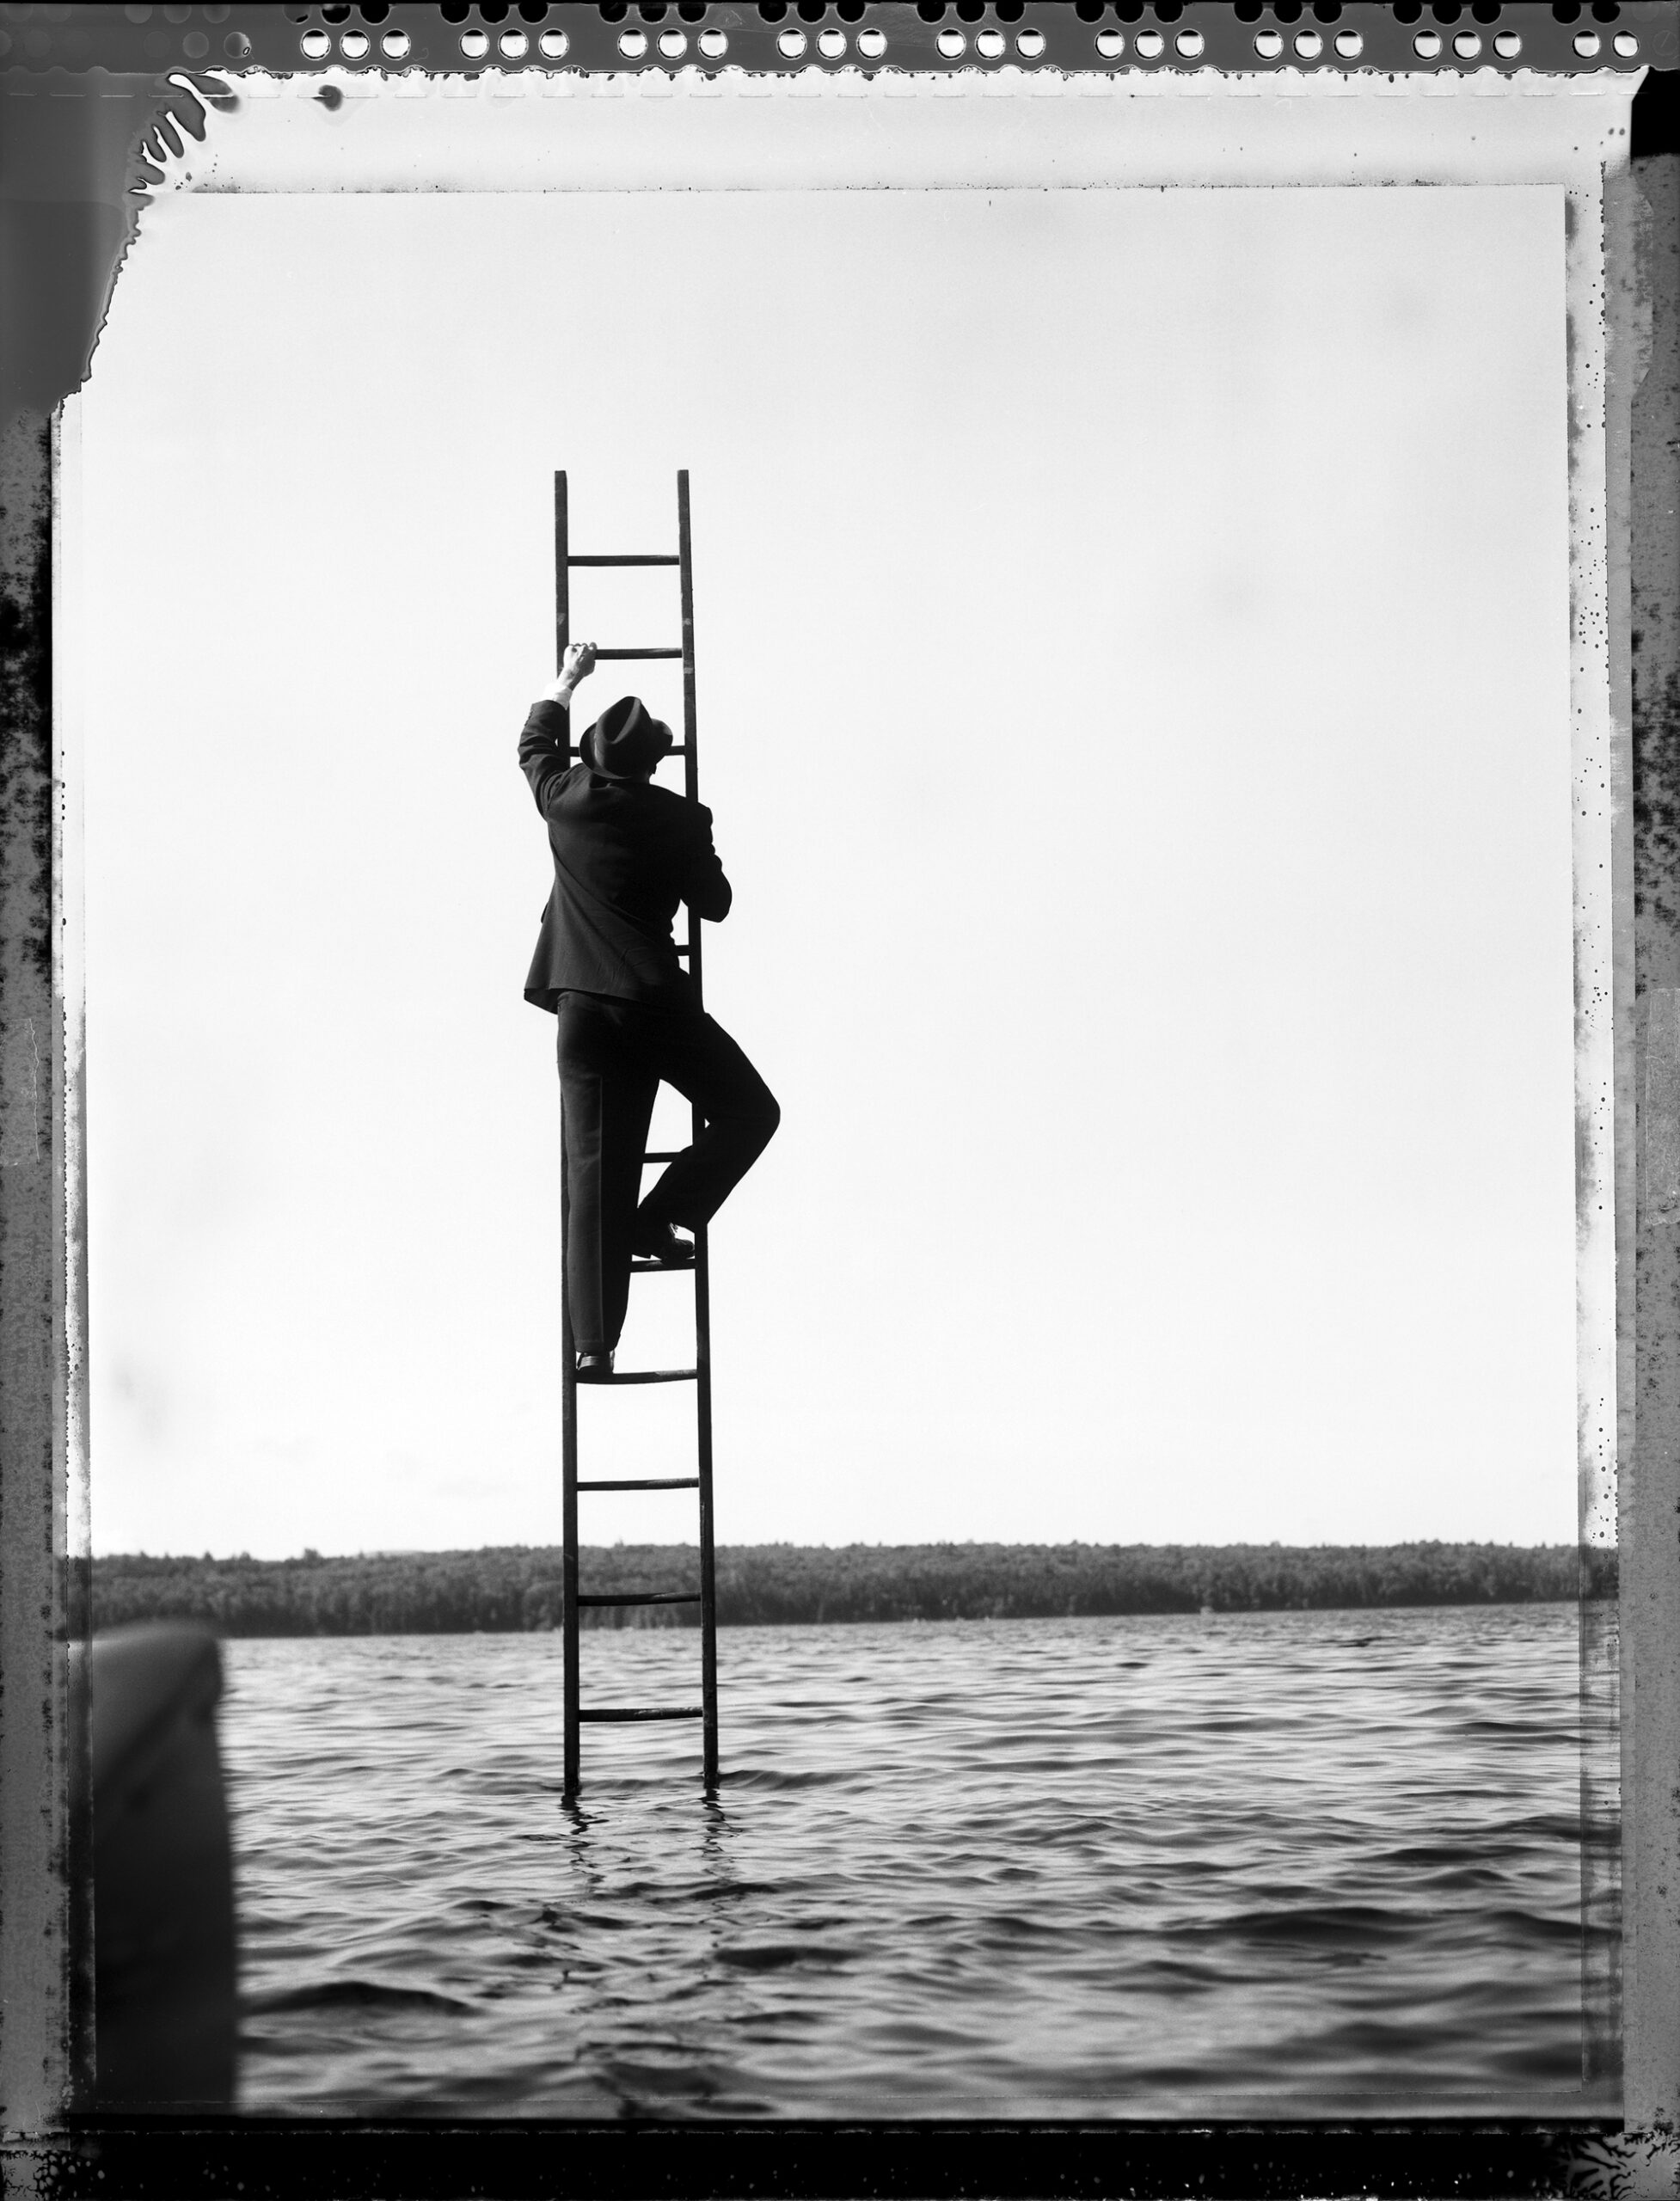 A man in a suit and hat on a ladder in the sea.